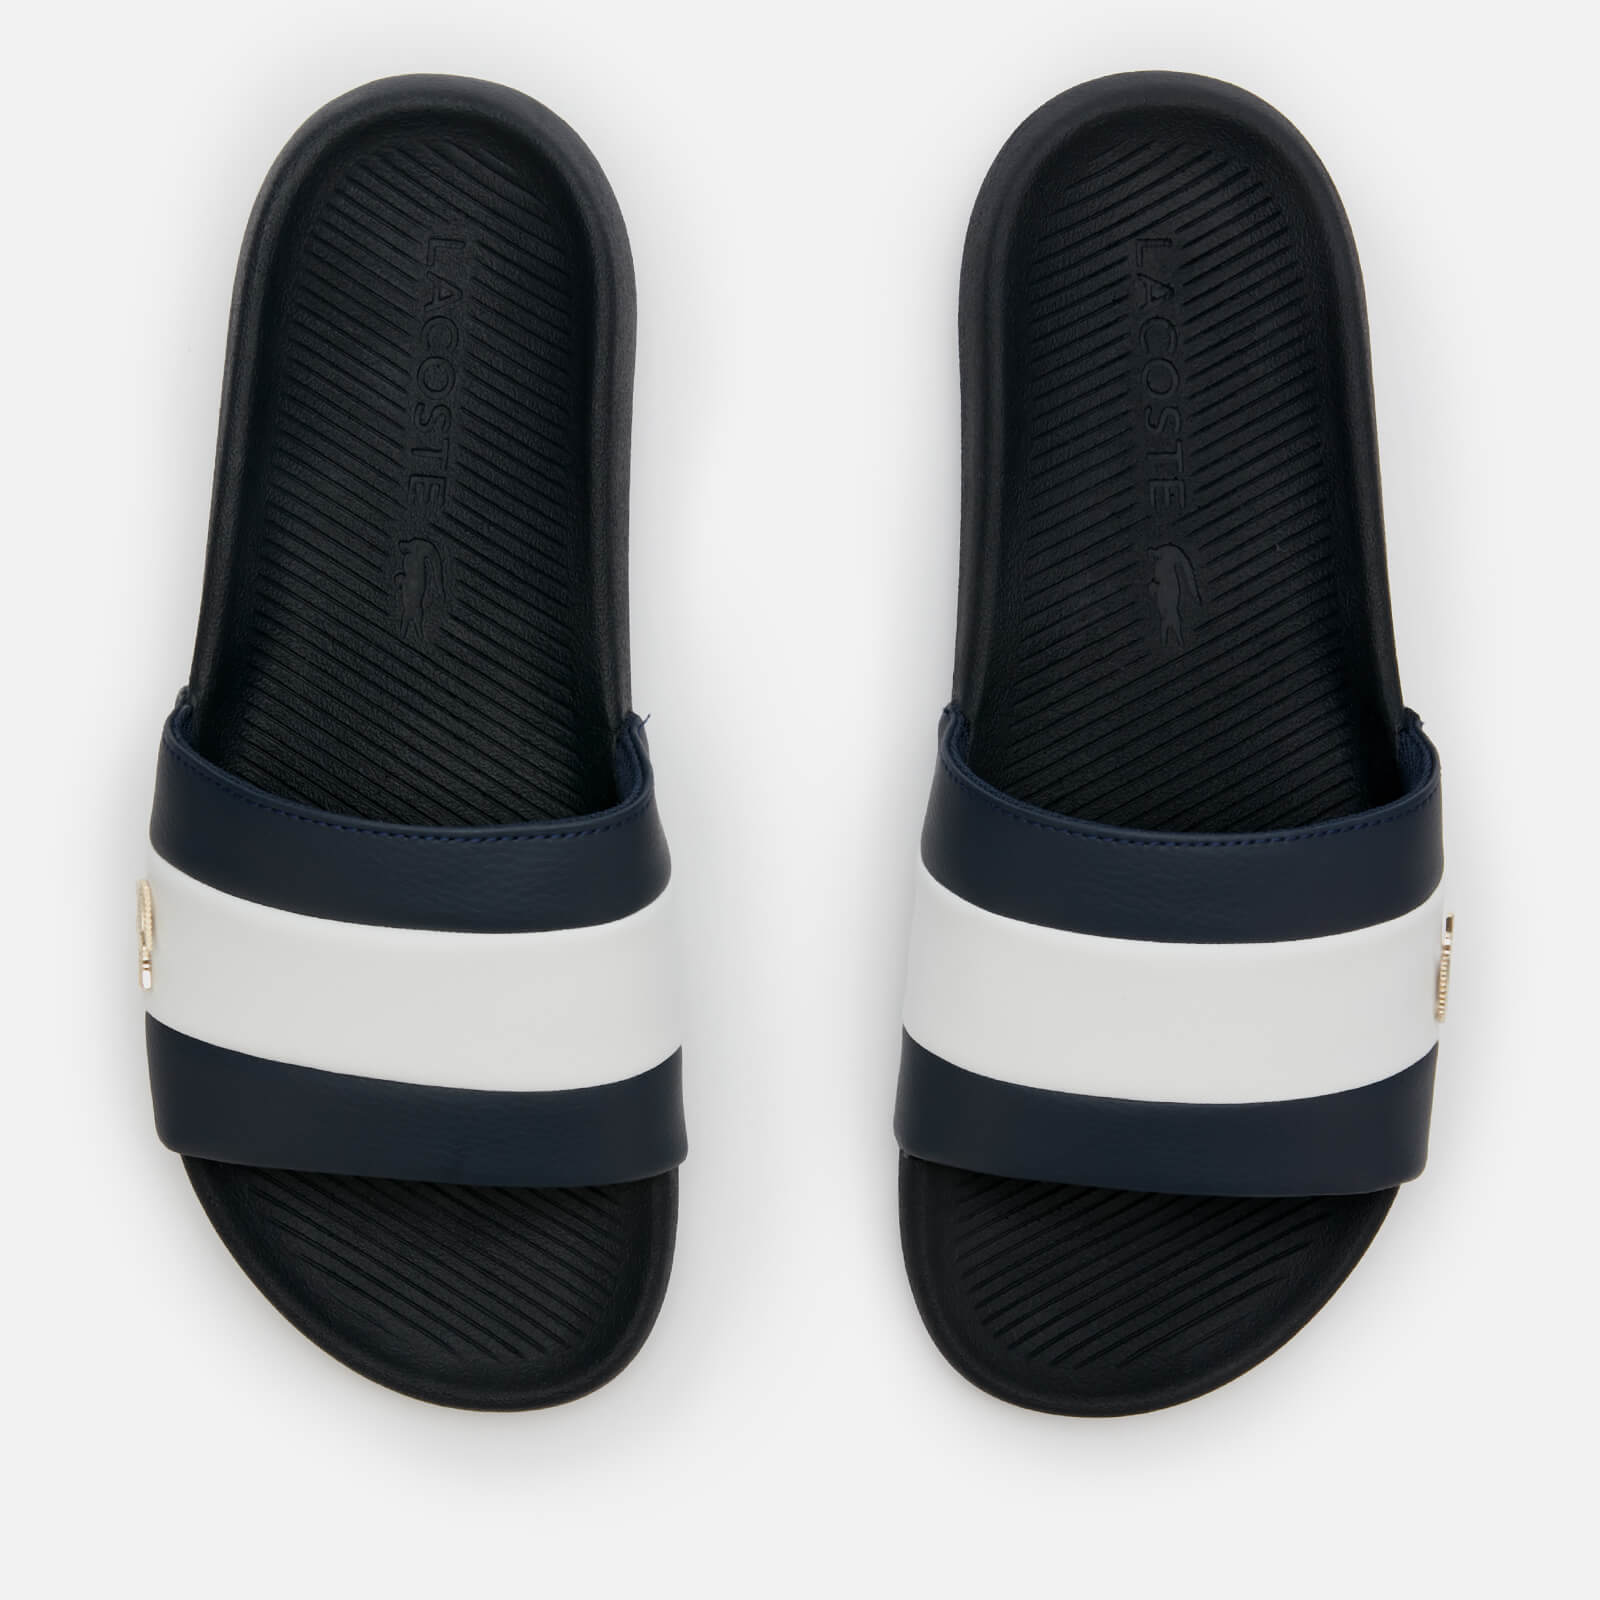 Lacoste Men's Croco Slide 120 Slide Sandals - Navy/White - UK 8